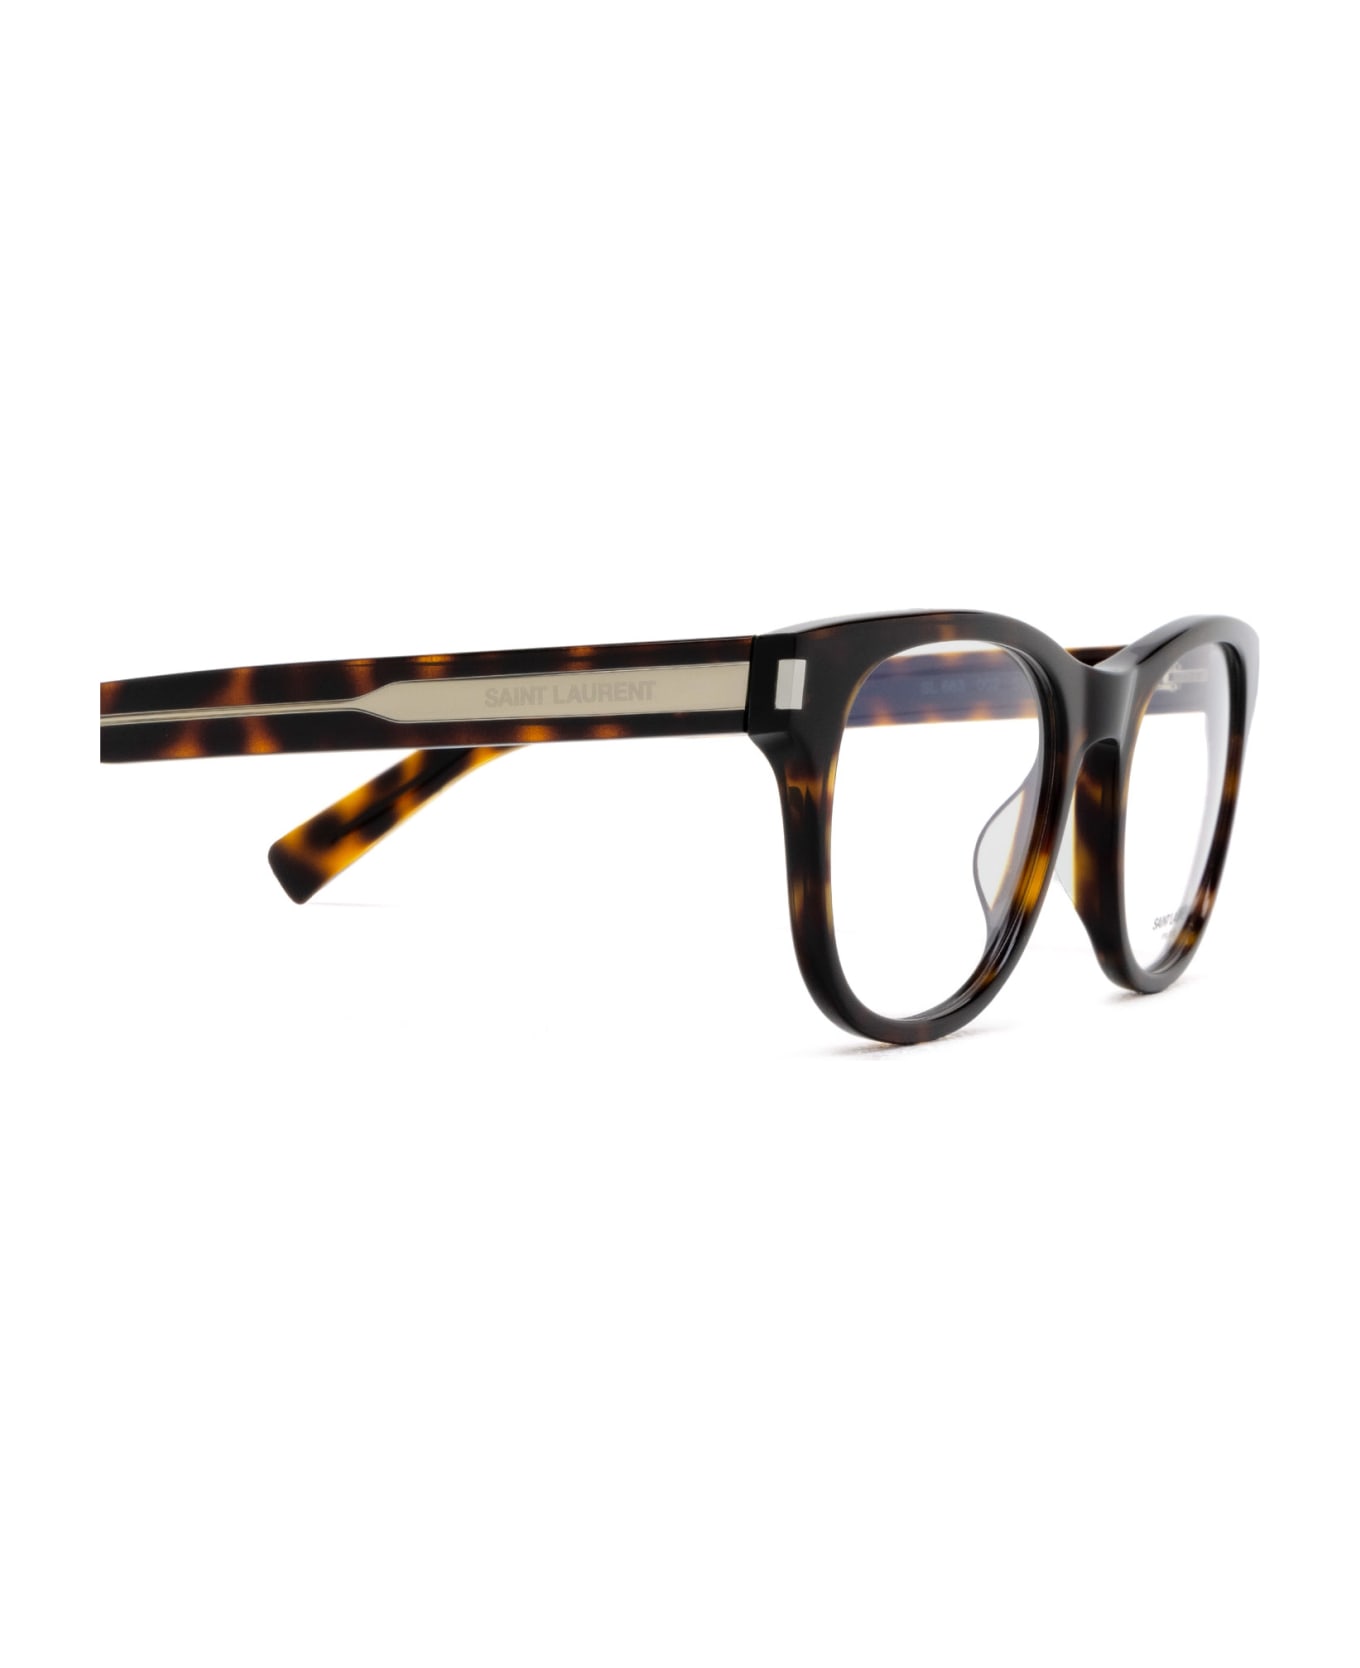 Saint Laurent Eyewear Sl 663 Havana Glasses - Havana アイウェア